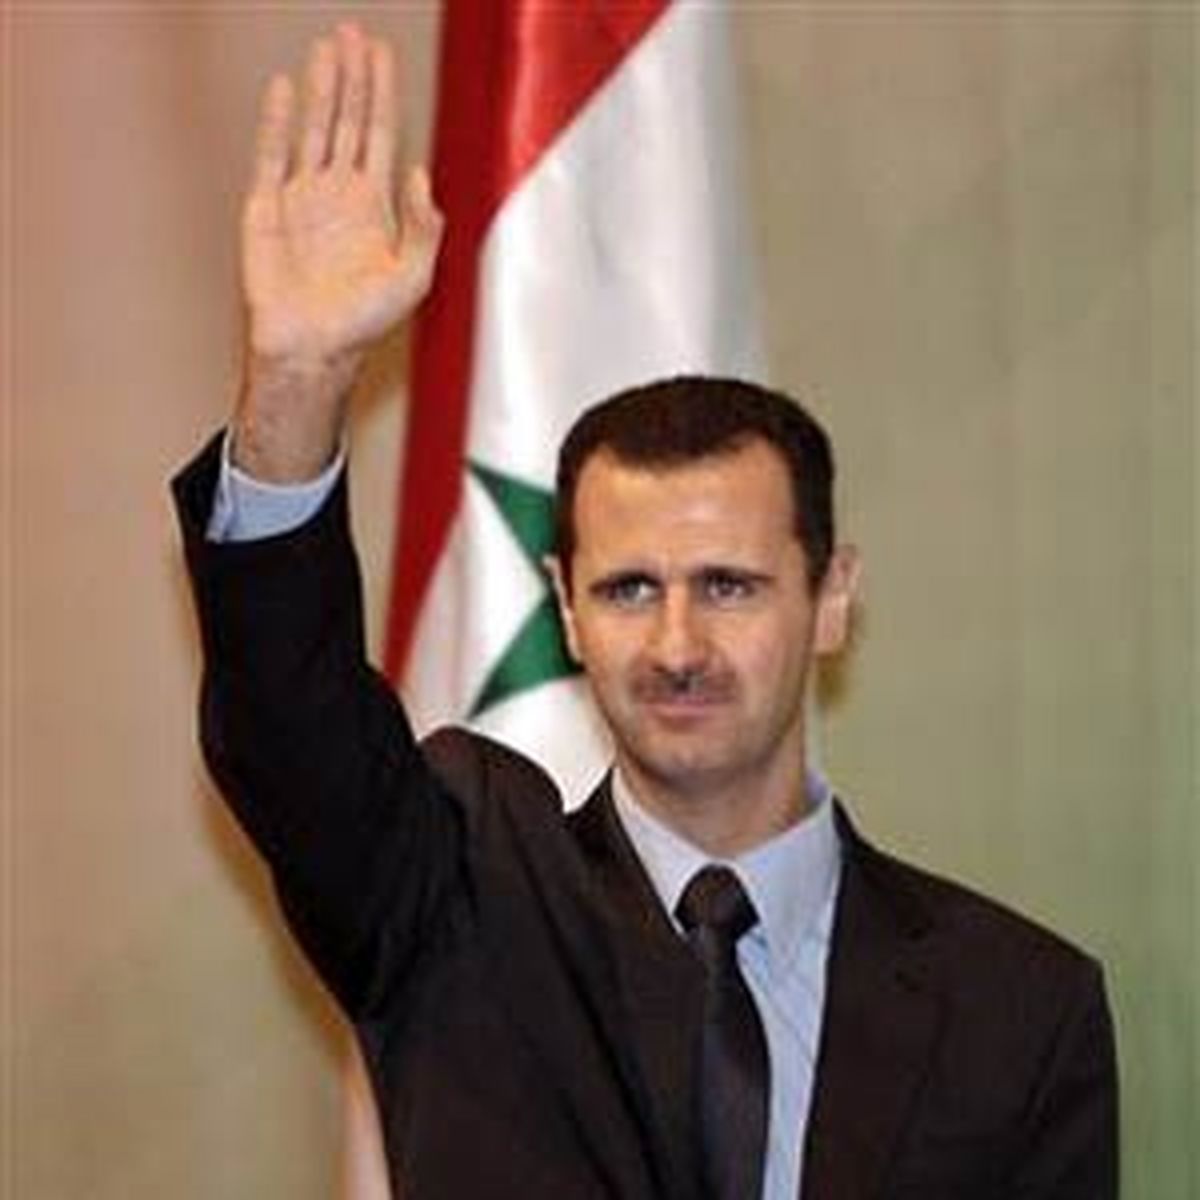 واکنش اسد به فرمان مهاجرتی ترامپ